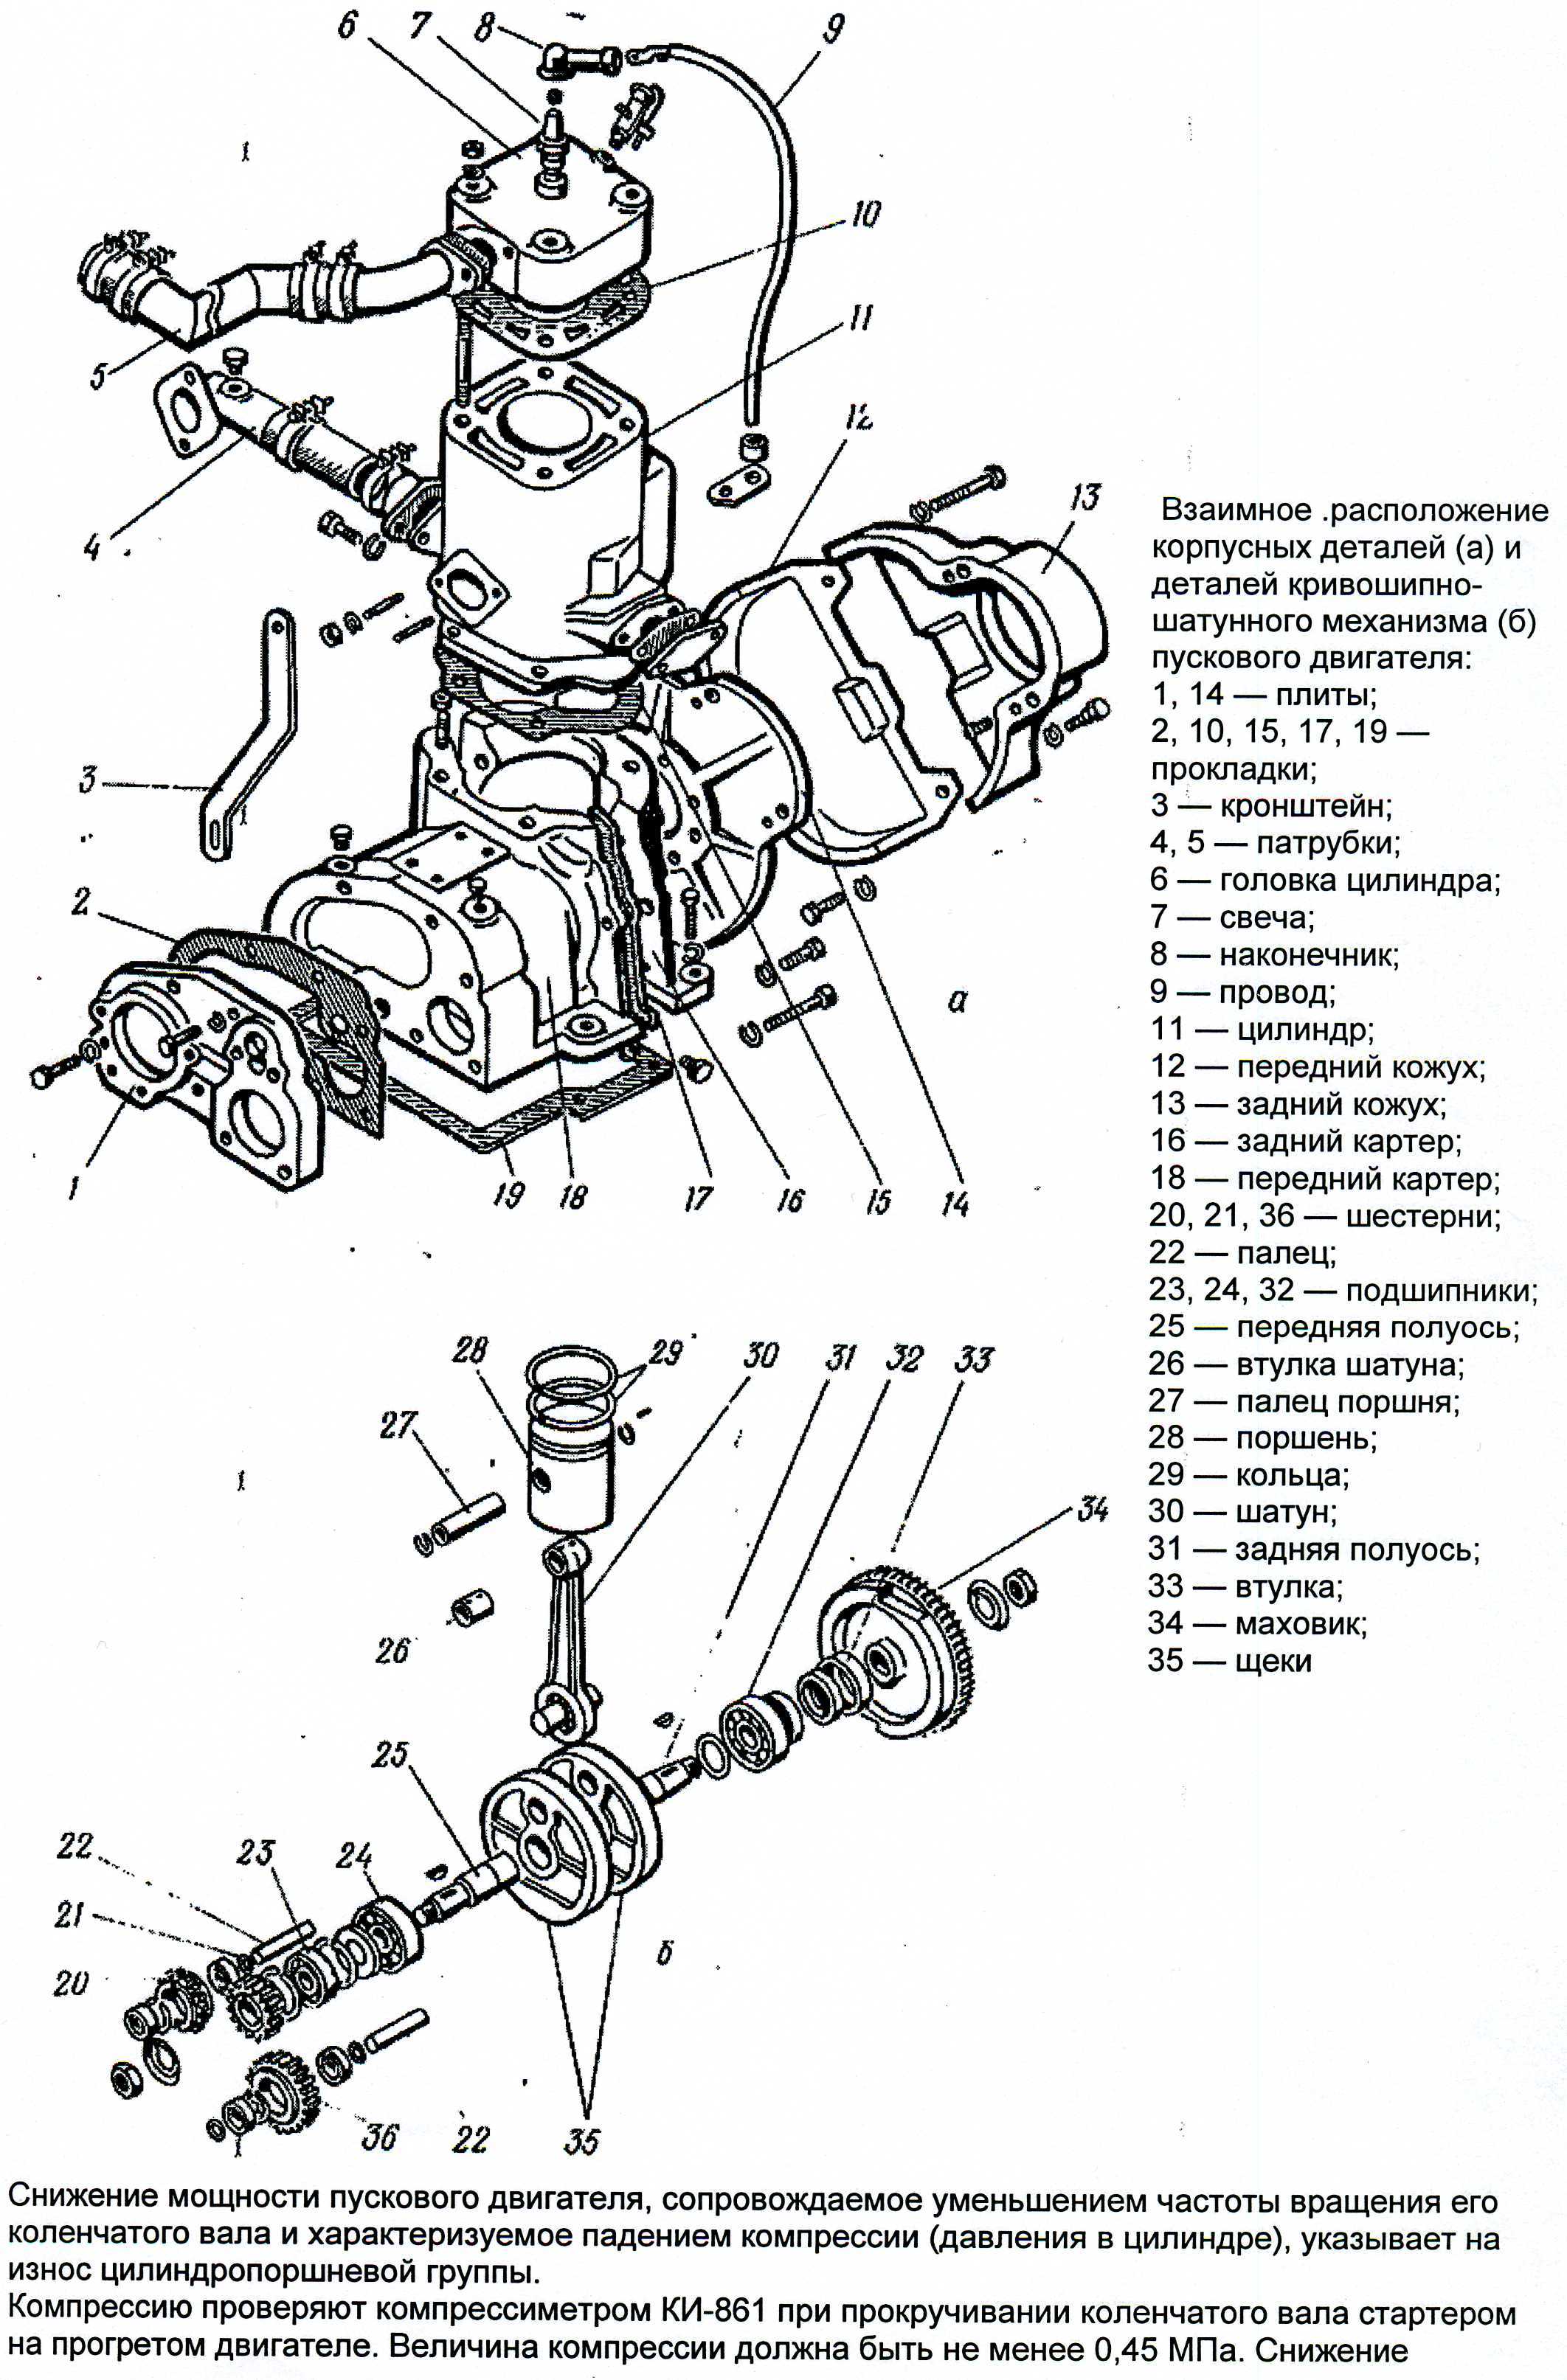 Пусковой двигатель пд-10м: схема, устройство, принцип работы. пускач пд-10